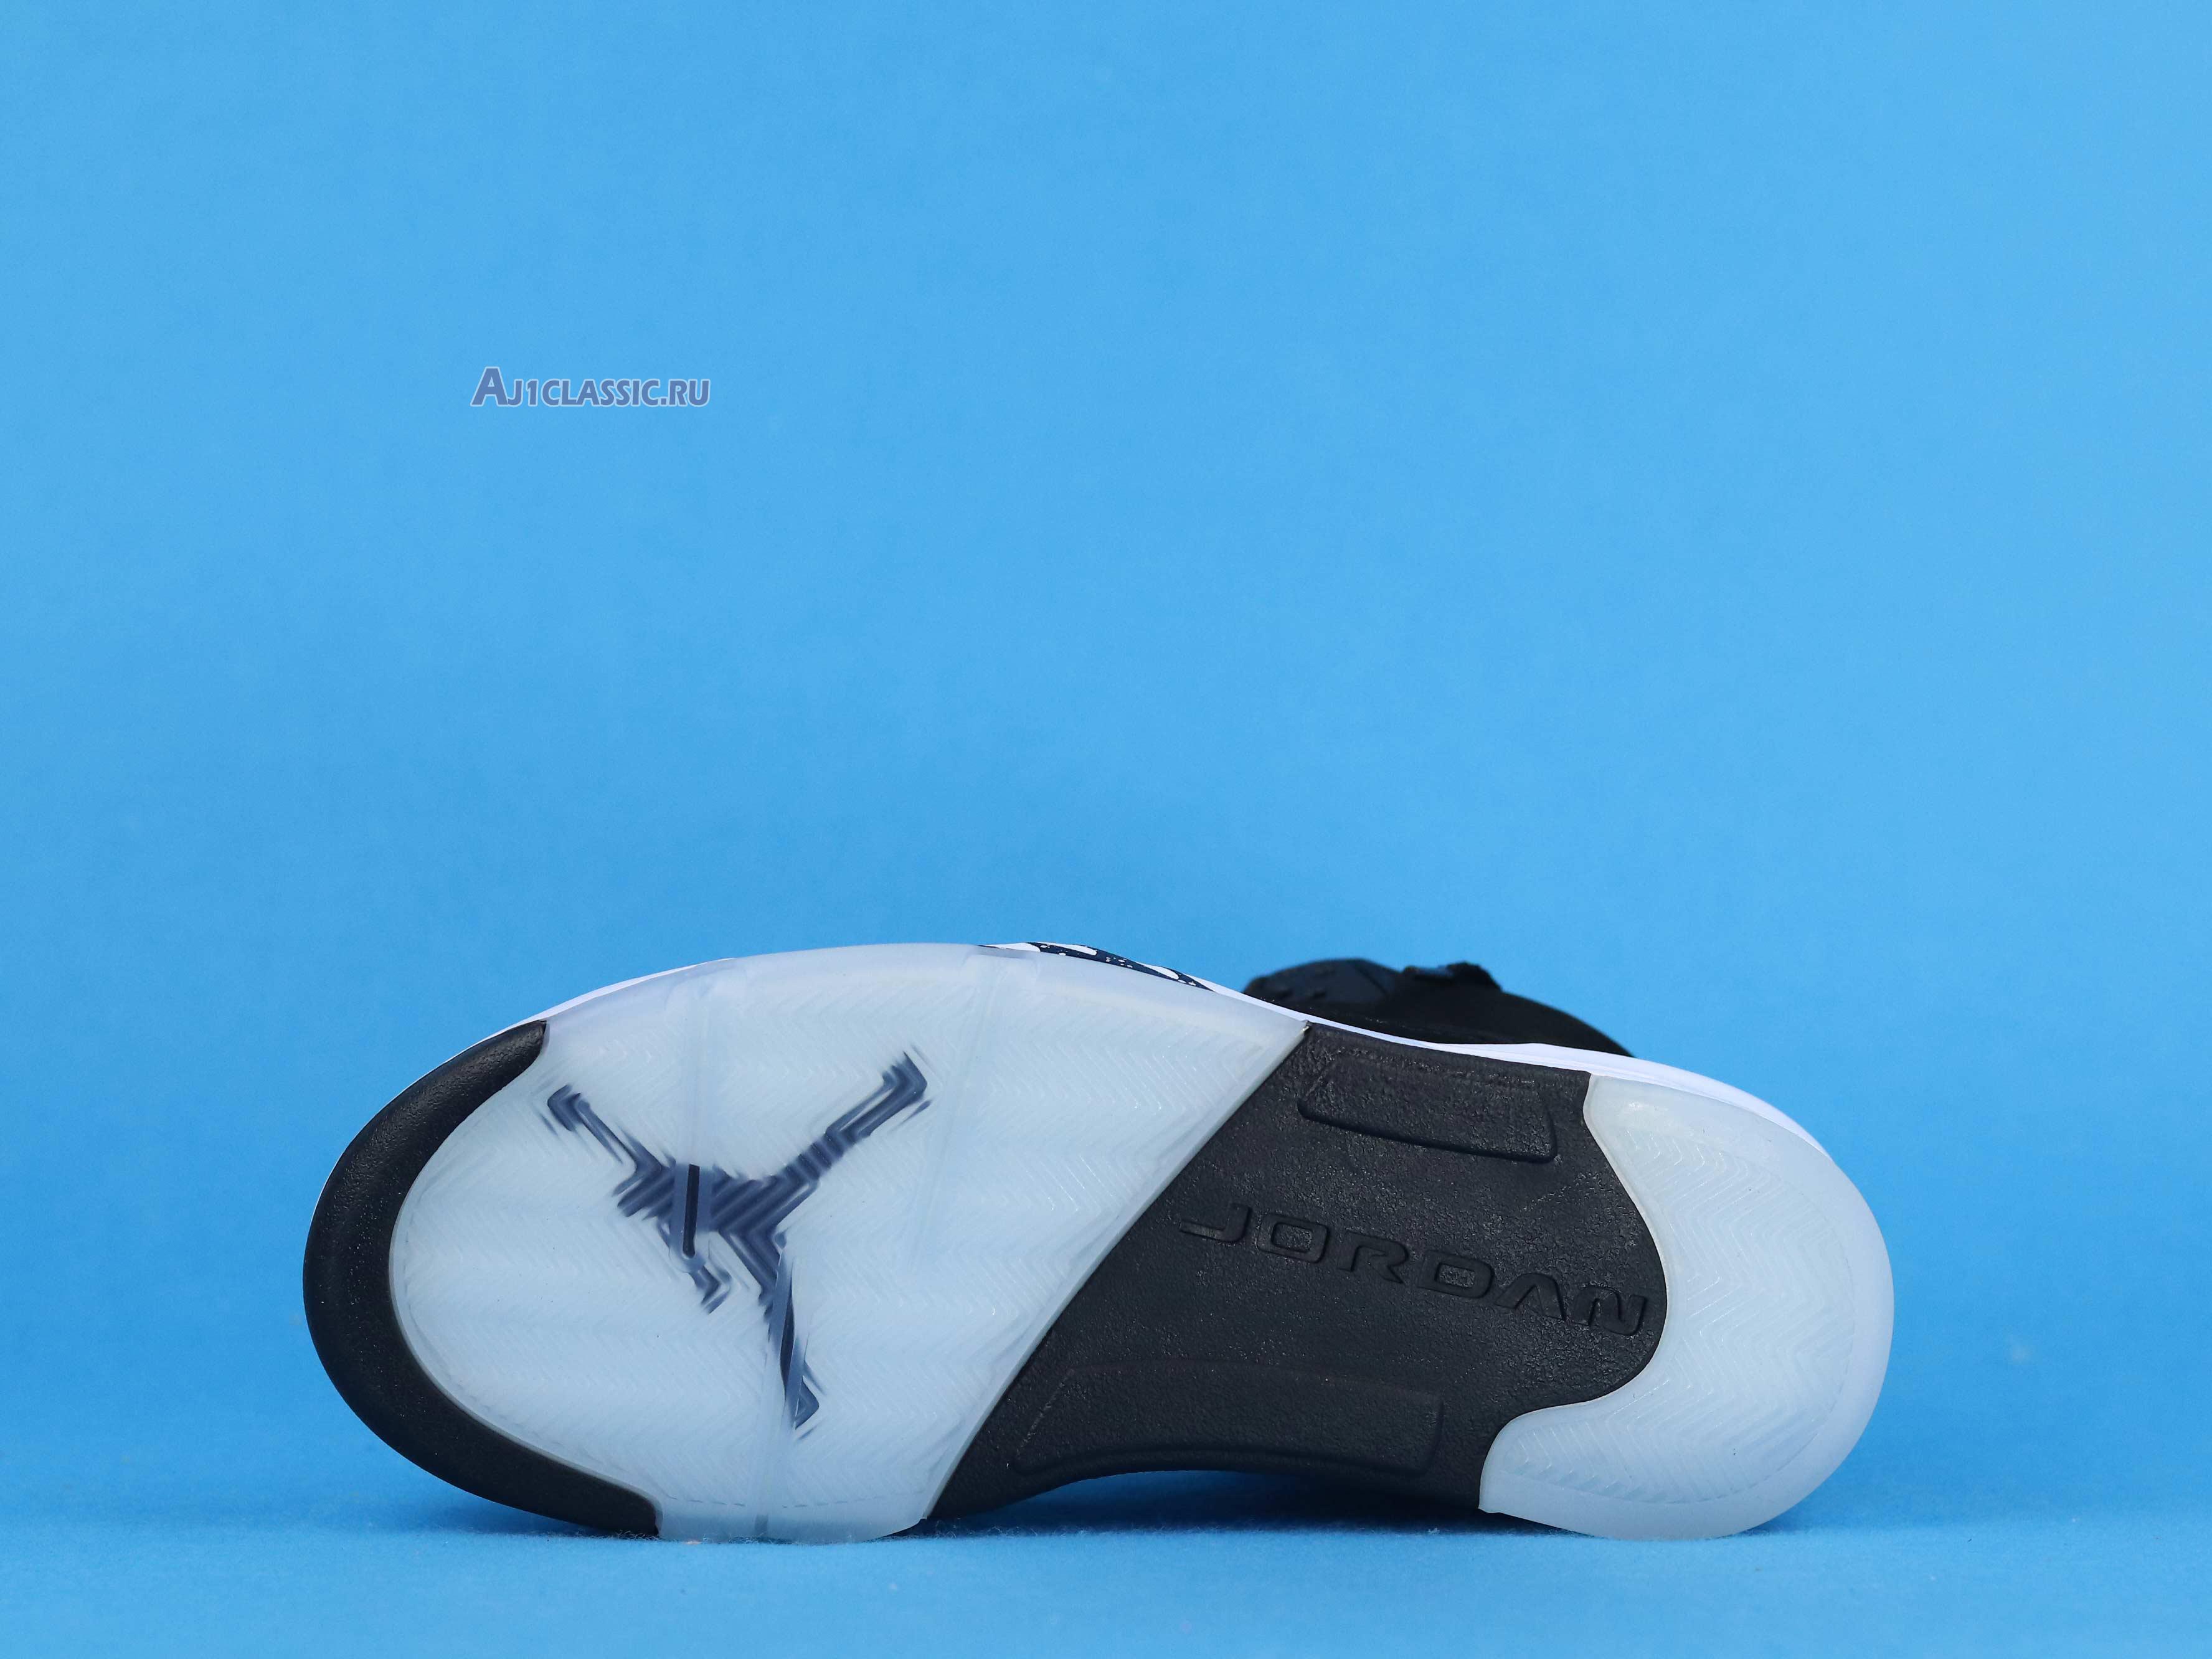 Air Jordan 5 Retro "Oreo 2013" 136027-035